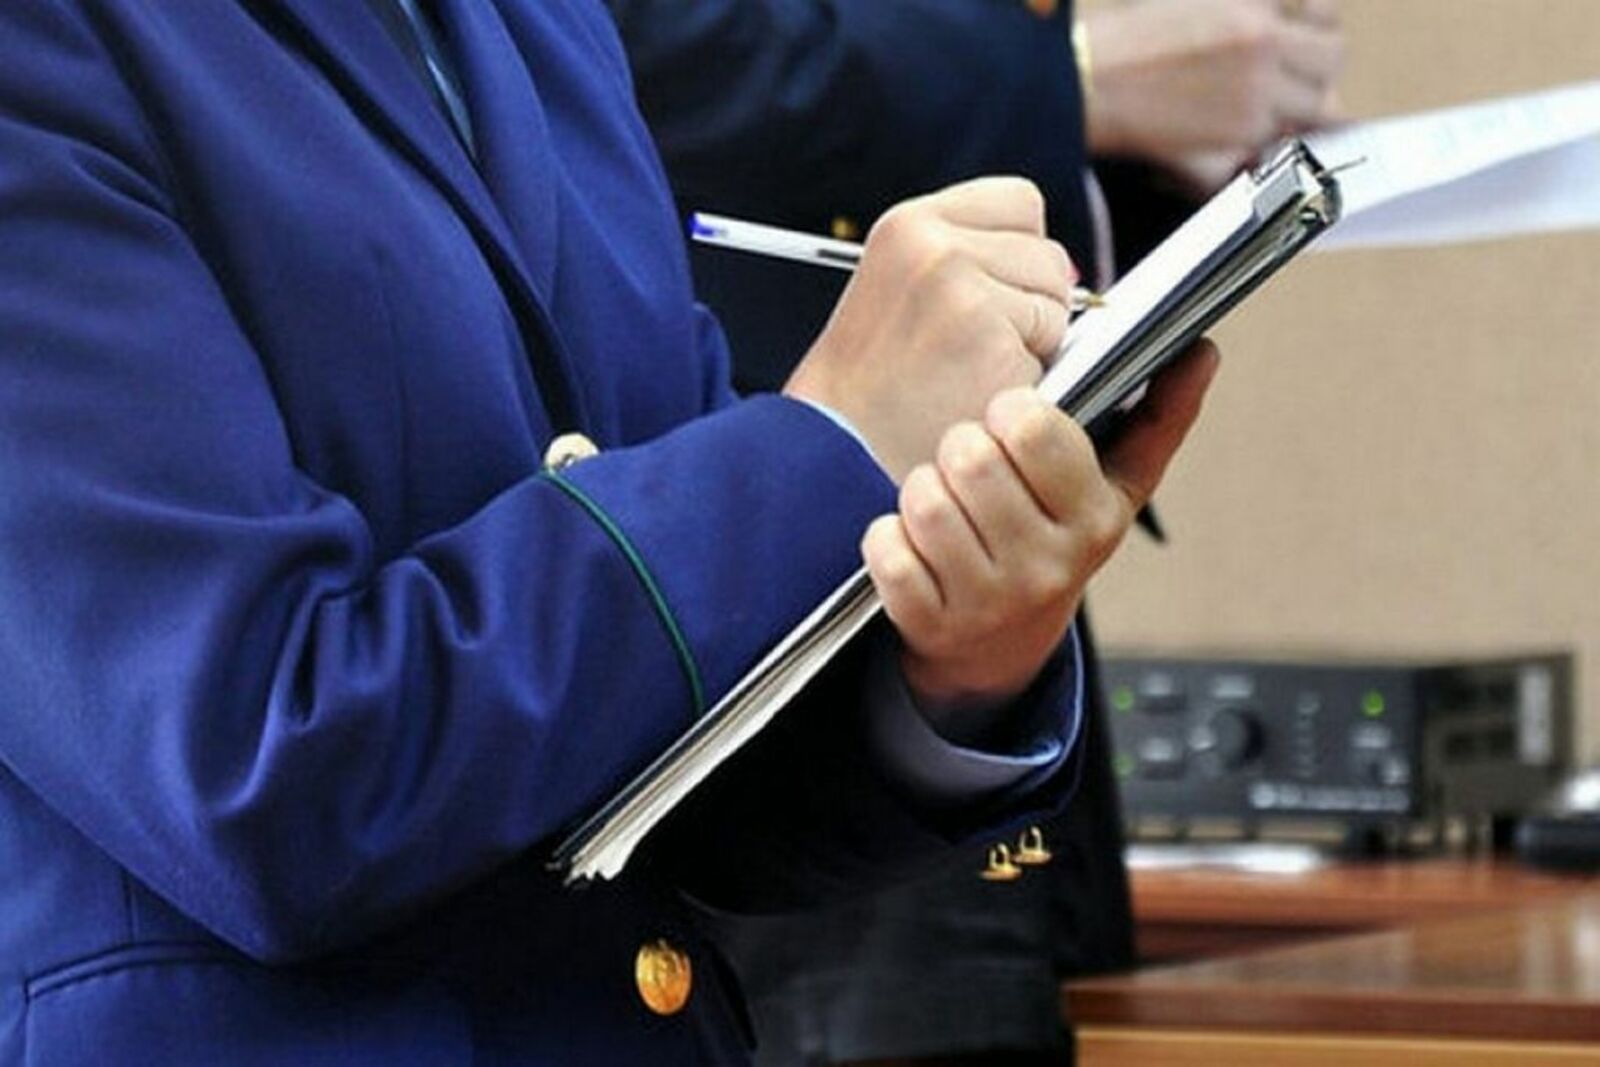 В Кяхтинский районный суд направлено уголовное дело о хищении социальных выплат, возбужденное на основании материалов прокурорской проверки.